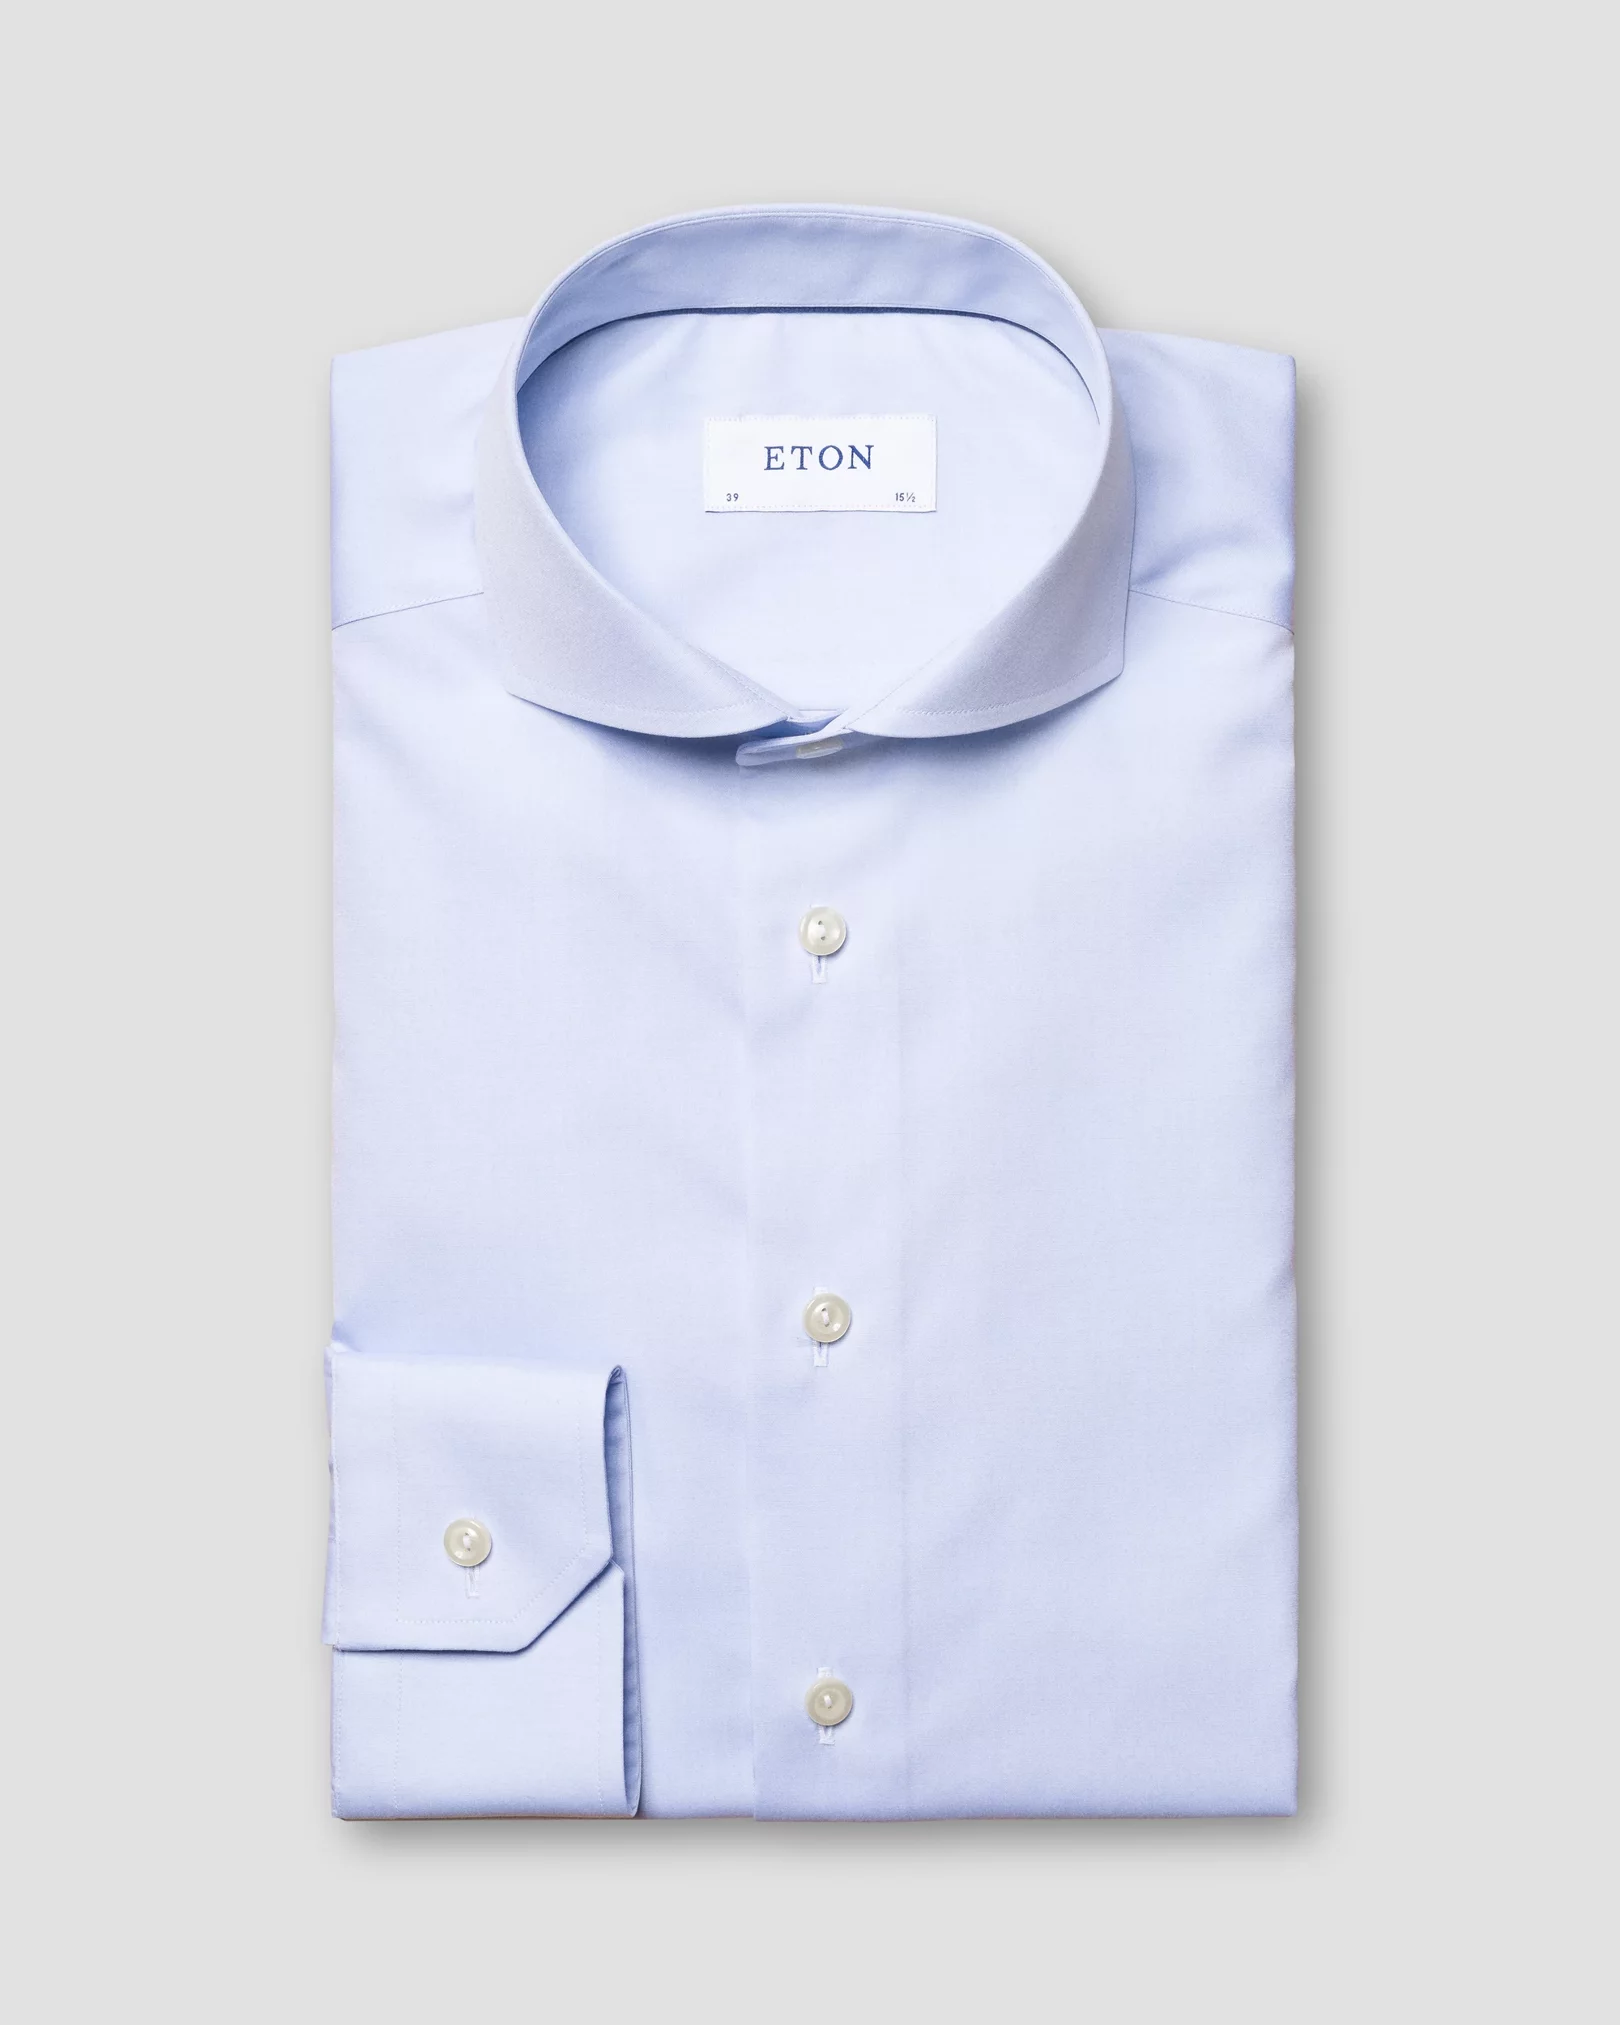 Light Blue Poplin Shirt - Extreme Cut Away